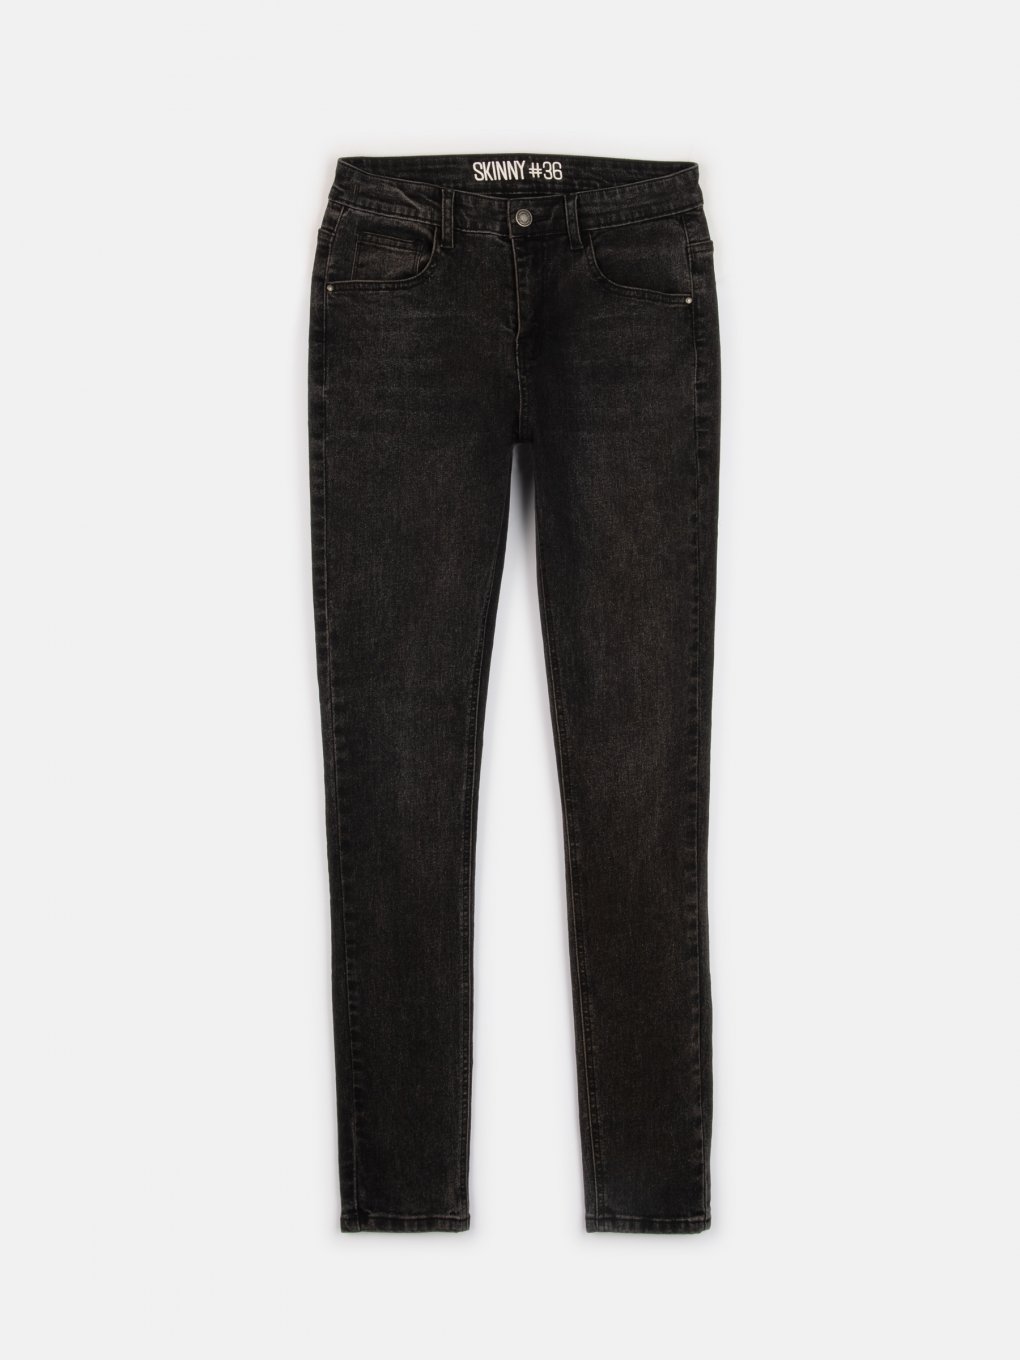 Skinny jeans in dark grey wash